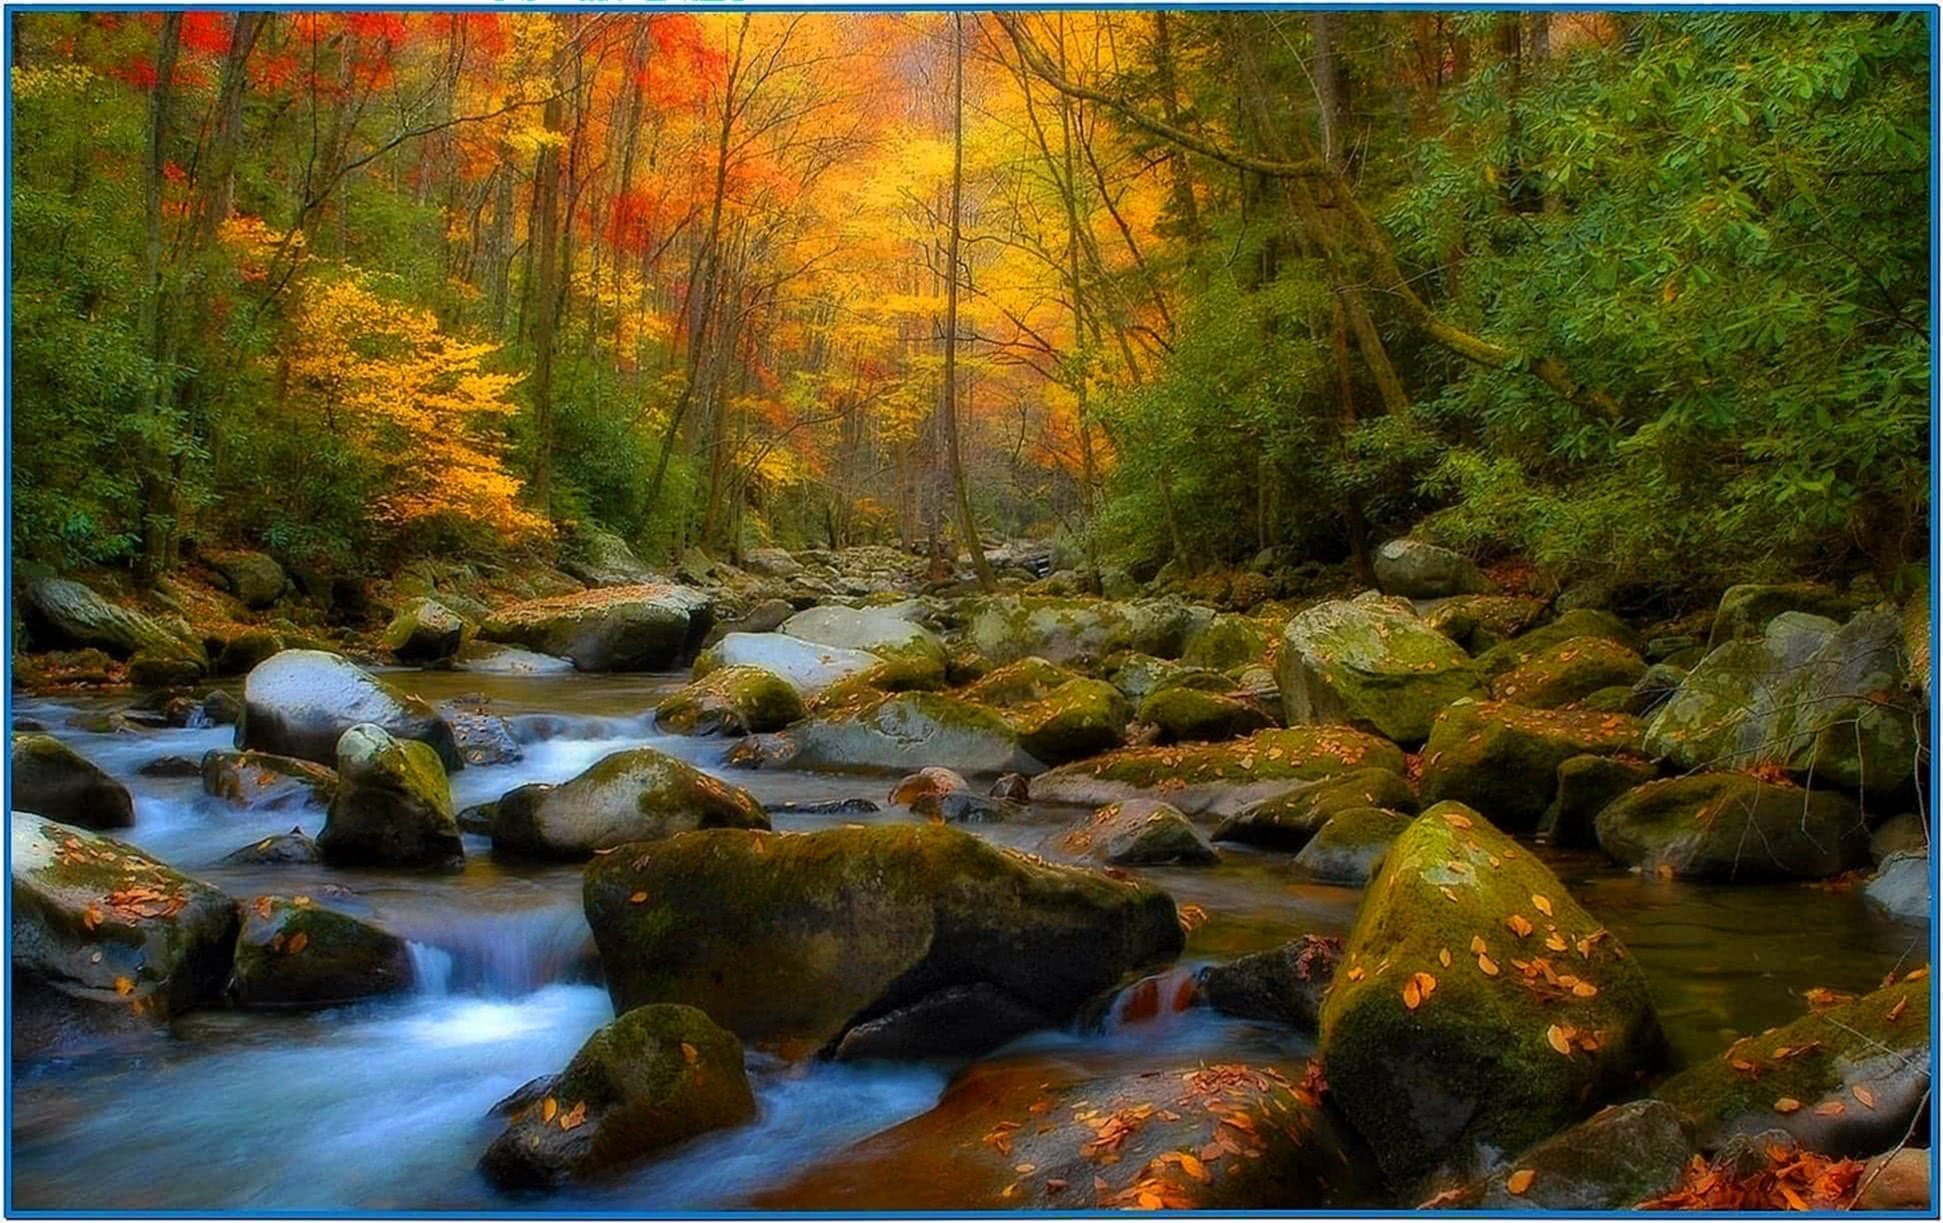 Screensaver Nature Scenes - Download-Screensavers.biz